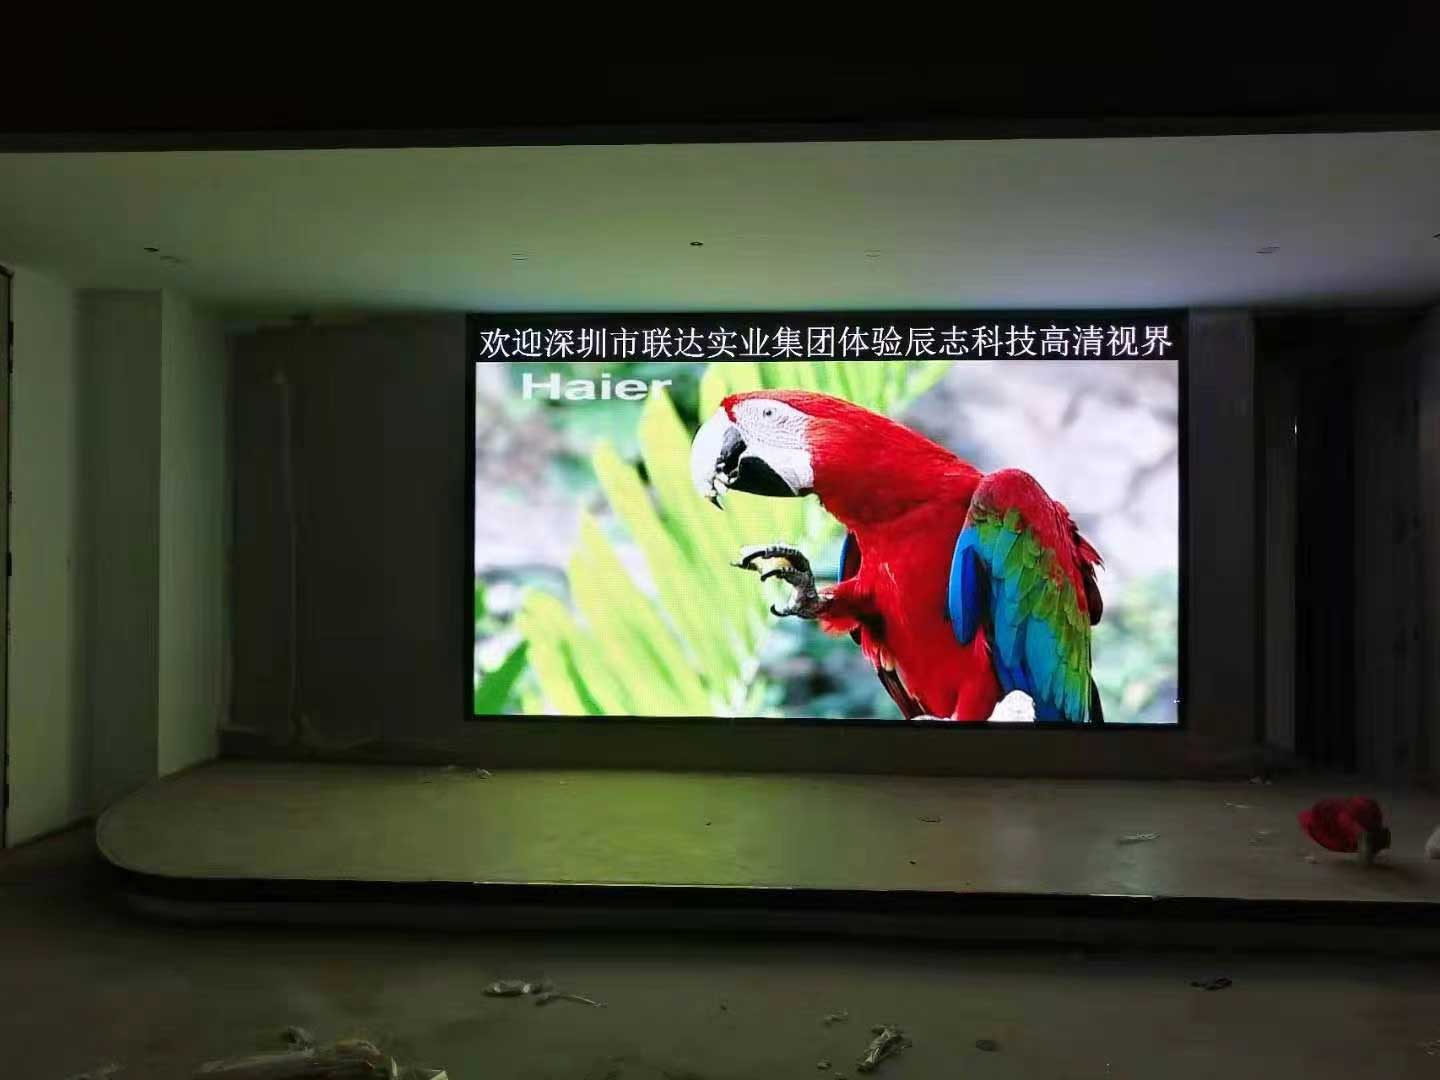 深圳联达实业技术有限公司会议培训室采用深圳市凯发体验科技有限公司室内高清P2.0全彩显示屏。